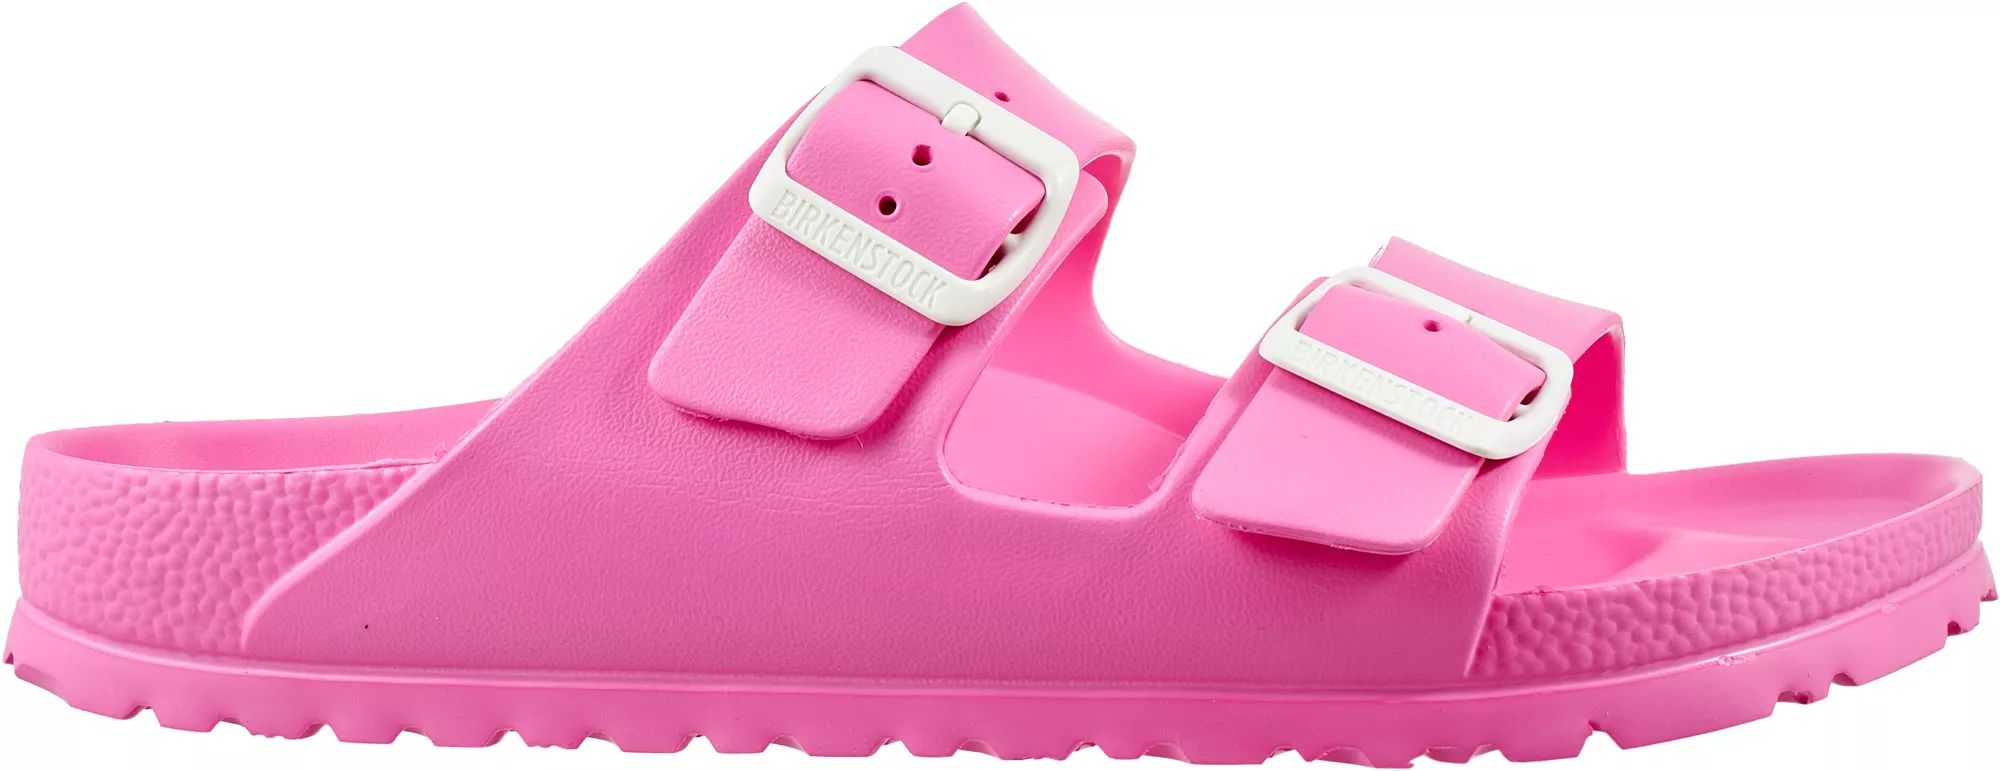 Birkenstock Women's Arizona Essentials EVA Sandals, Size: 7/7.5 US (38 Euro), Pink | Dick's Sporting Goods